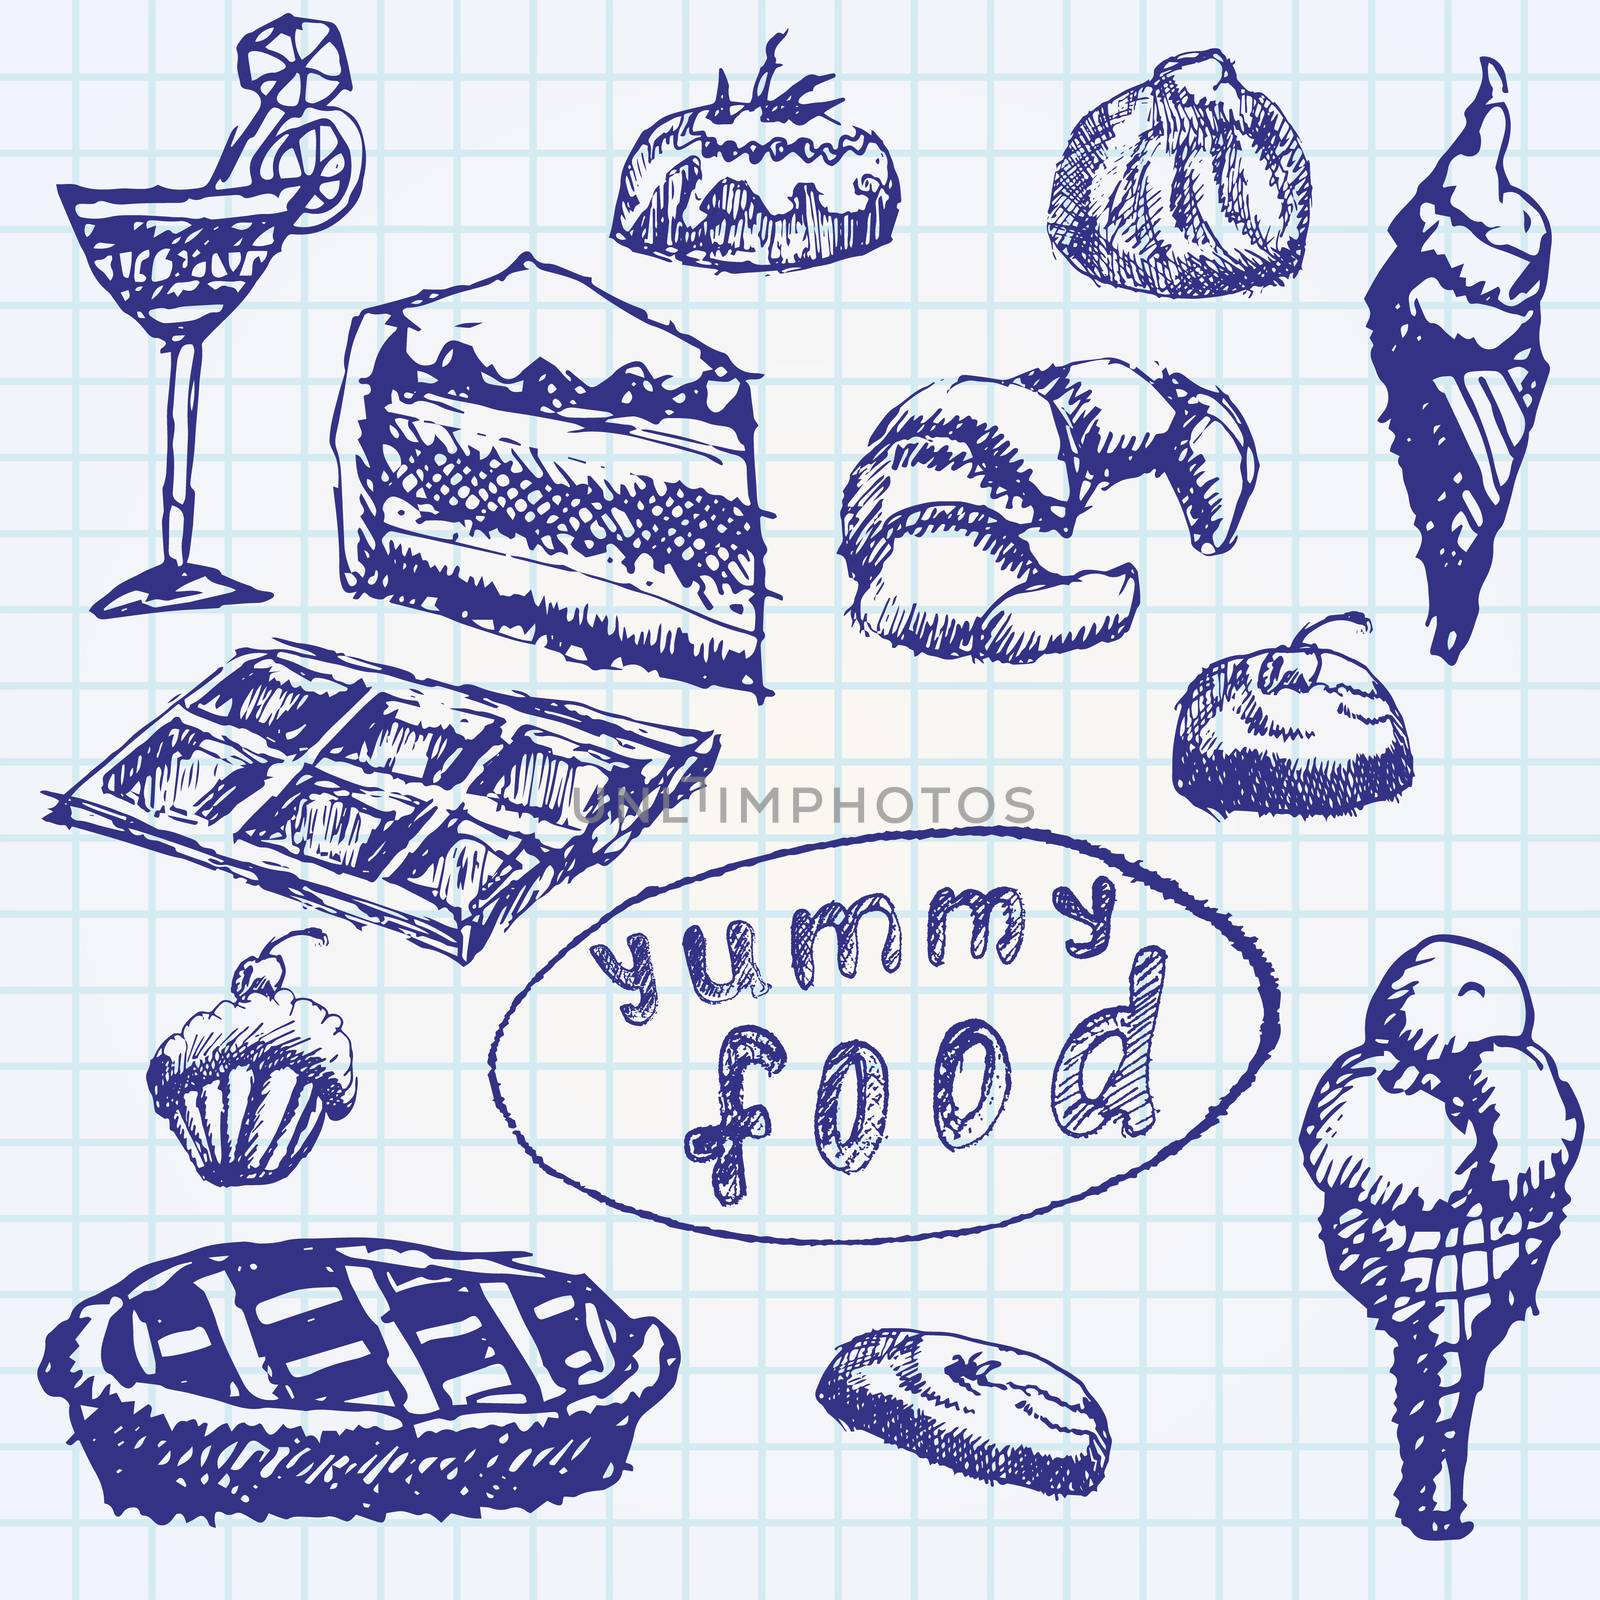 Food deserts set sketch handdrawn on notebook paper.